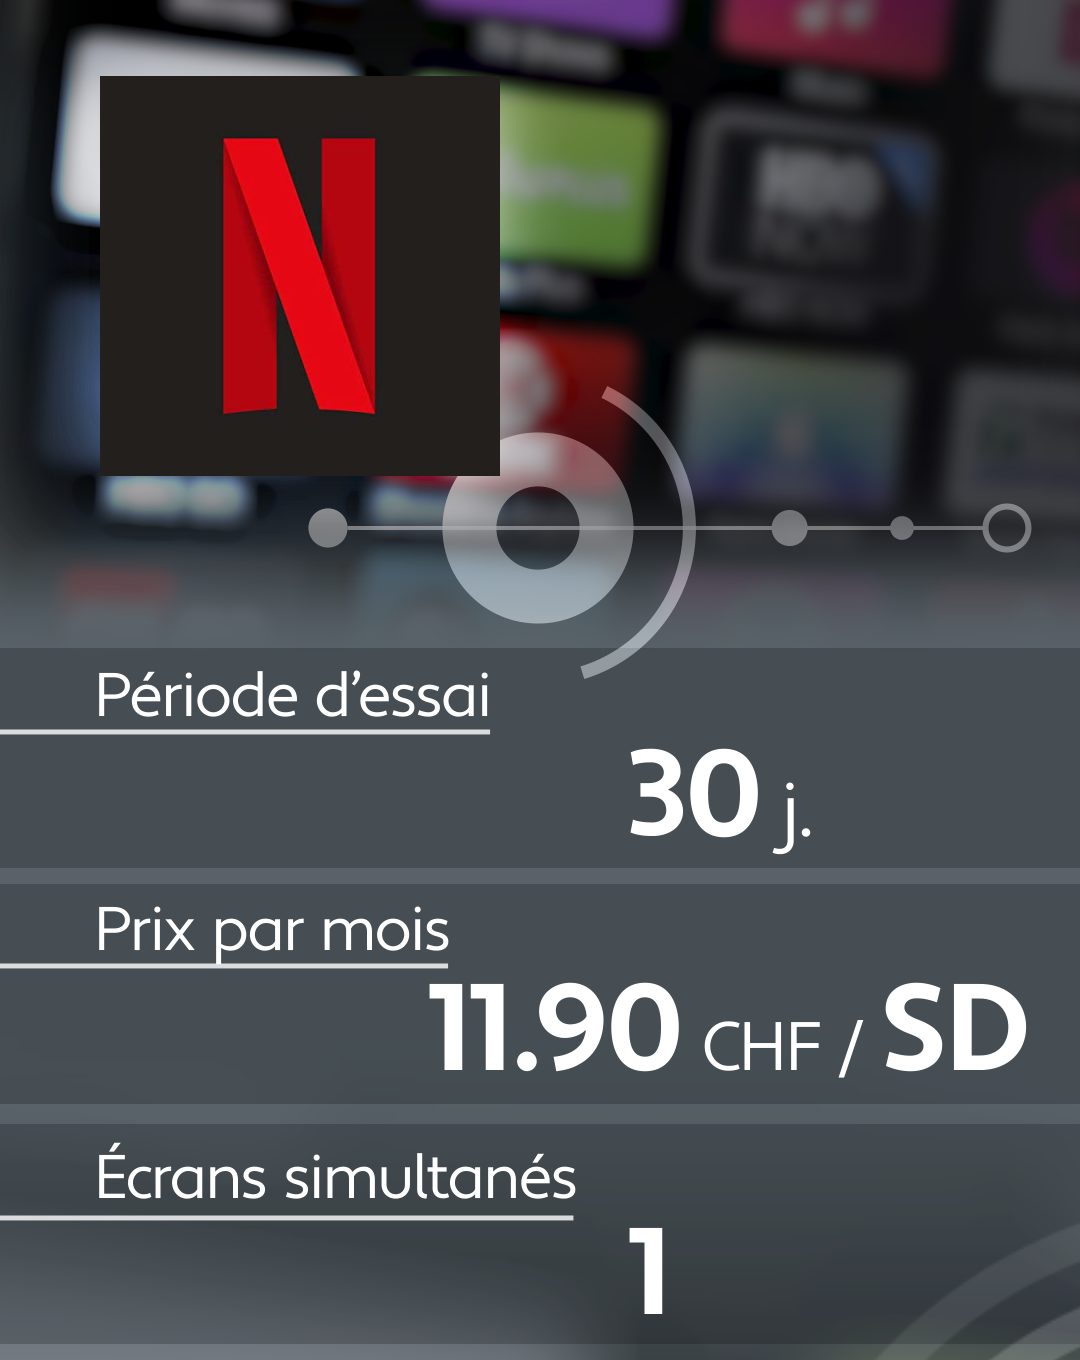 Conditions d'abonnement de quelques plateformes de streaming: Netflix.